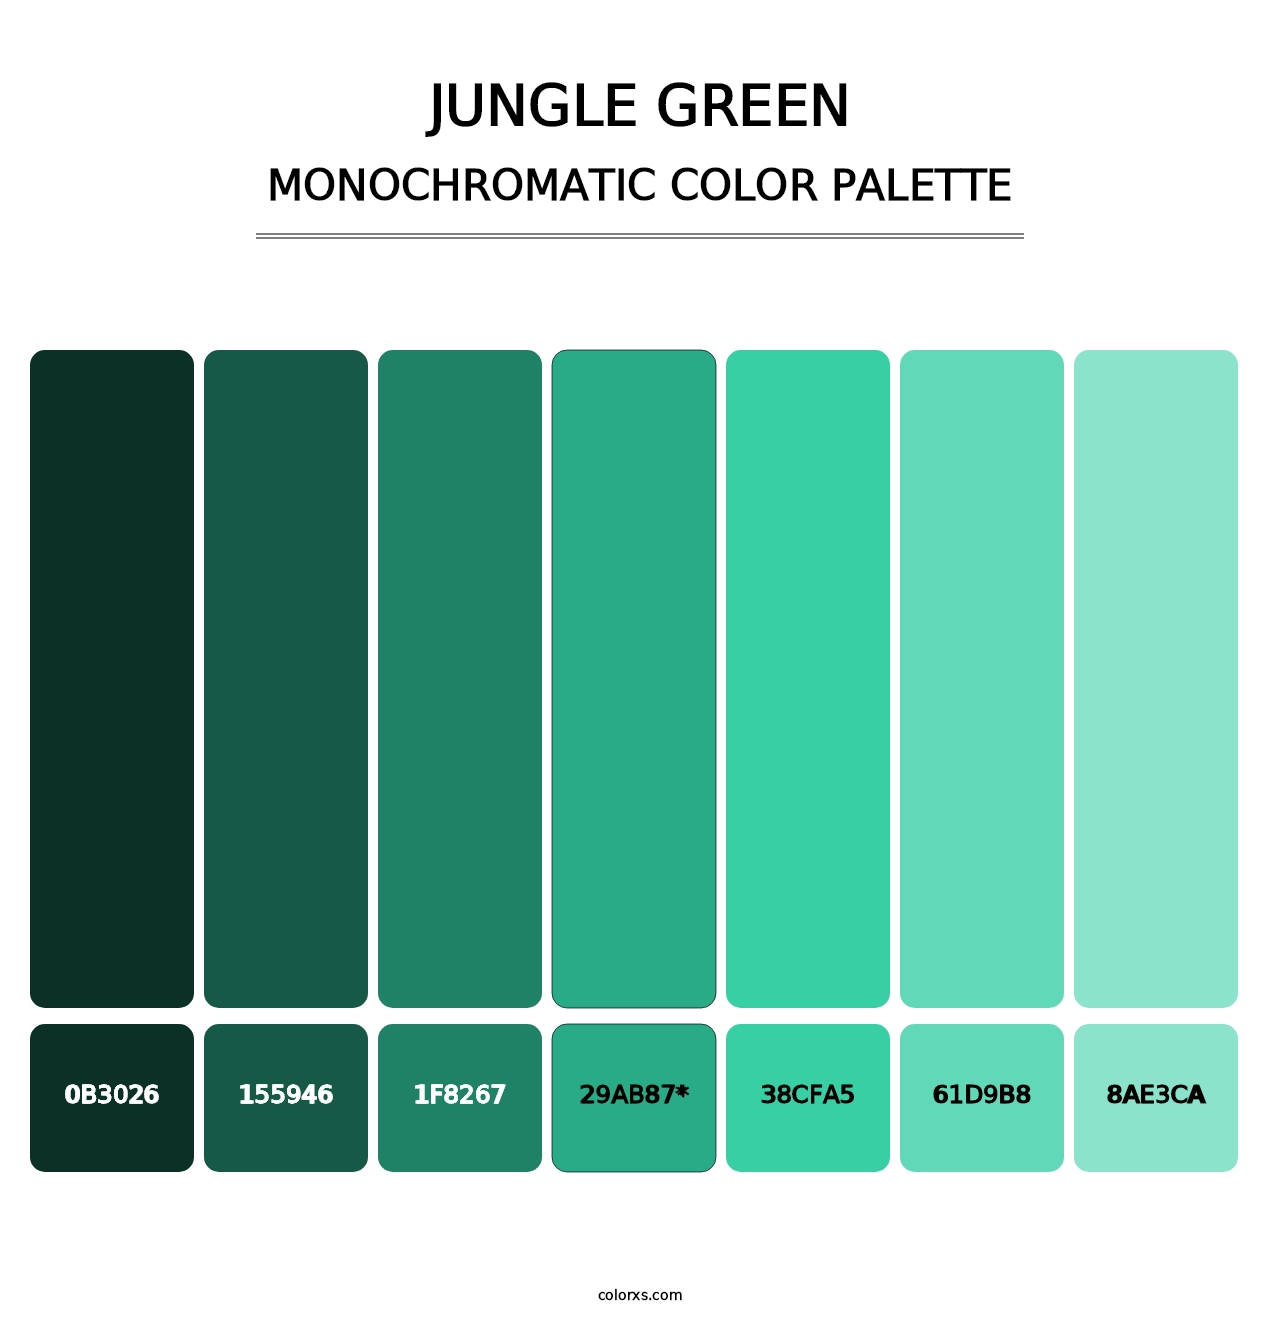 Jungle Green - Monochromatic Color Palette